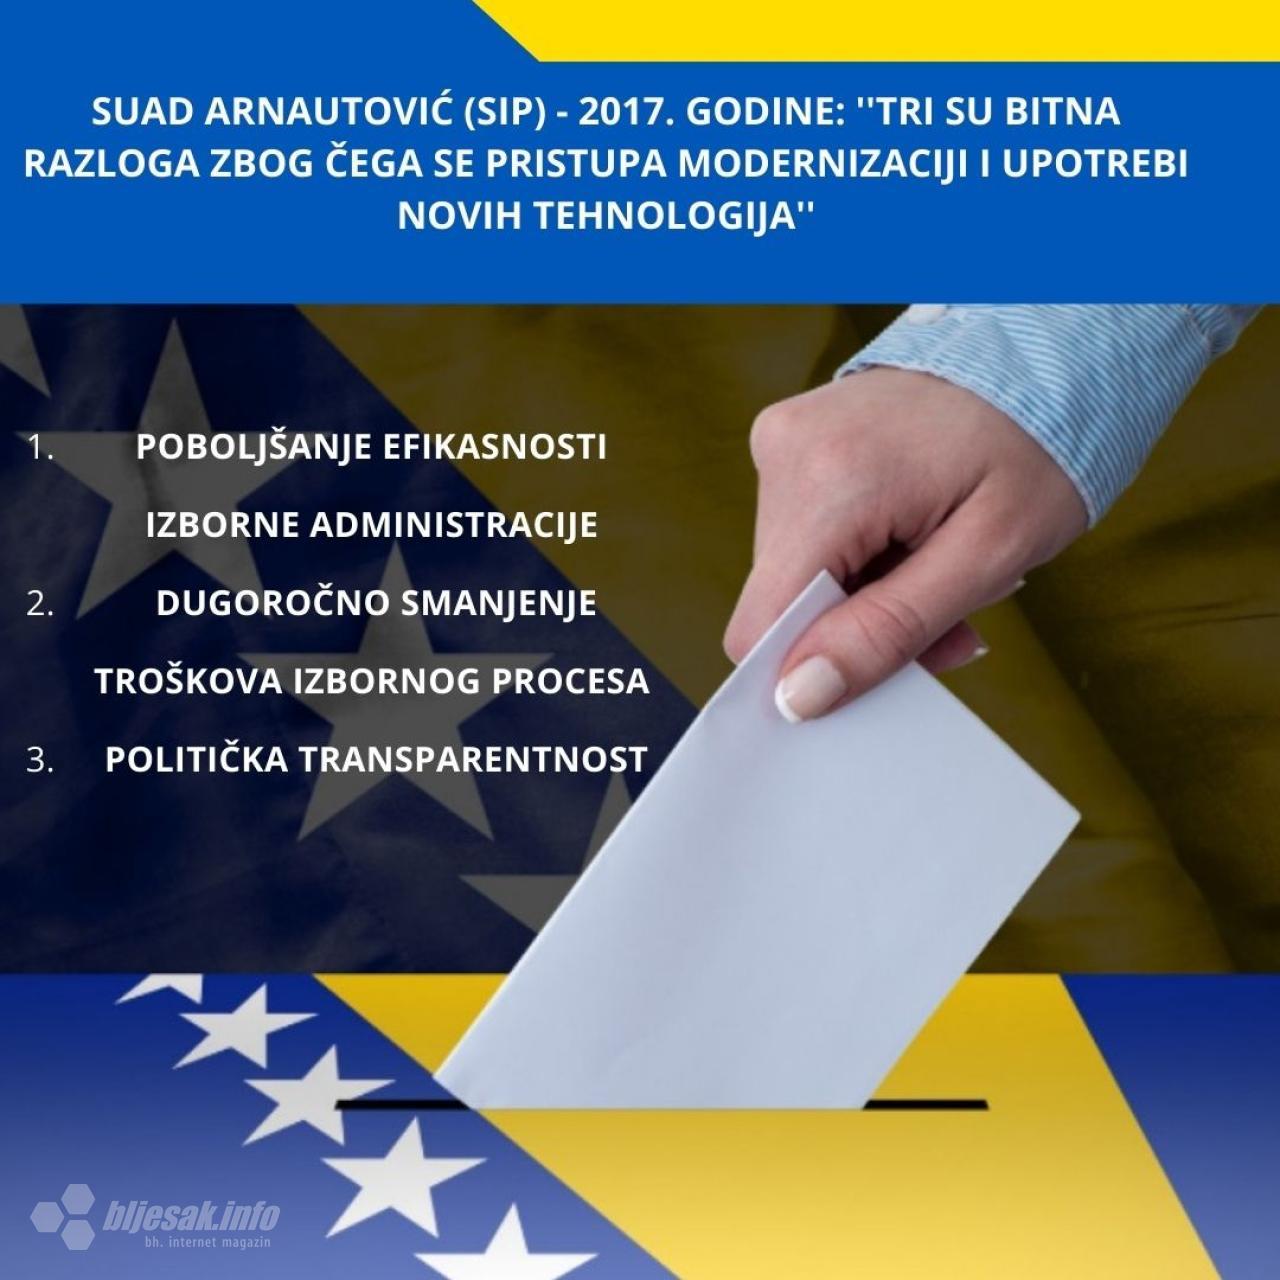 Izjave Suada Arnautovića (SIP BiH) 2017. godine o digitalizaciji izbornog procesa. - Modernizacija izbornog procesa